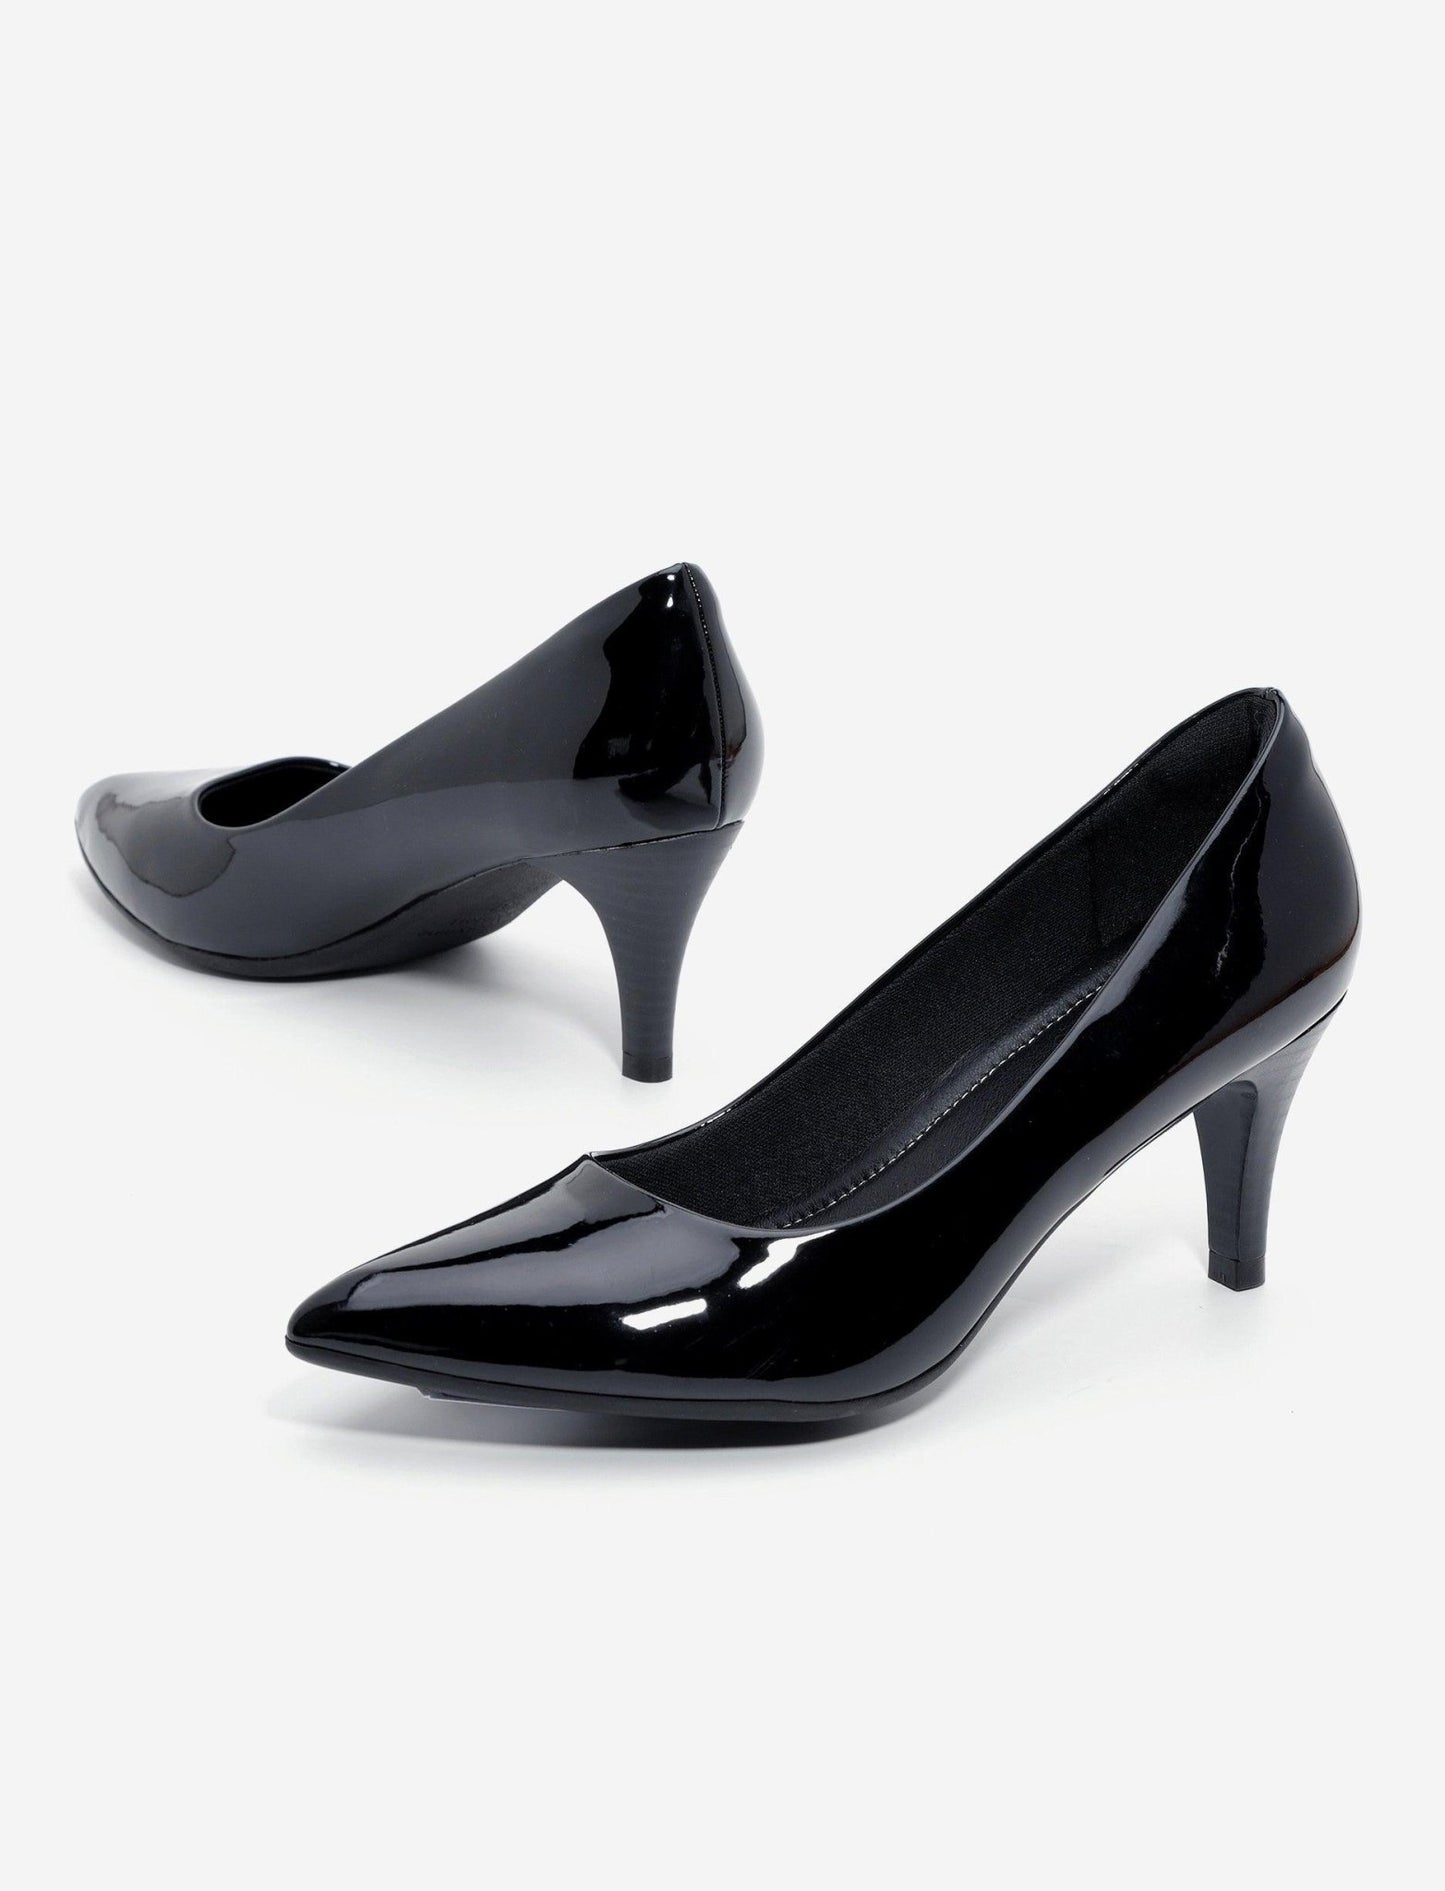 SEVENTYNINE - נעלי עקב סירה לנשים דגם 807 בצבע שחור לקה - MASHBIR//365